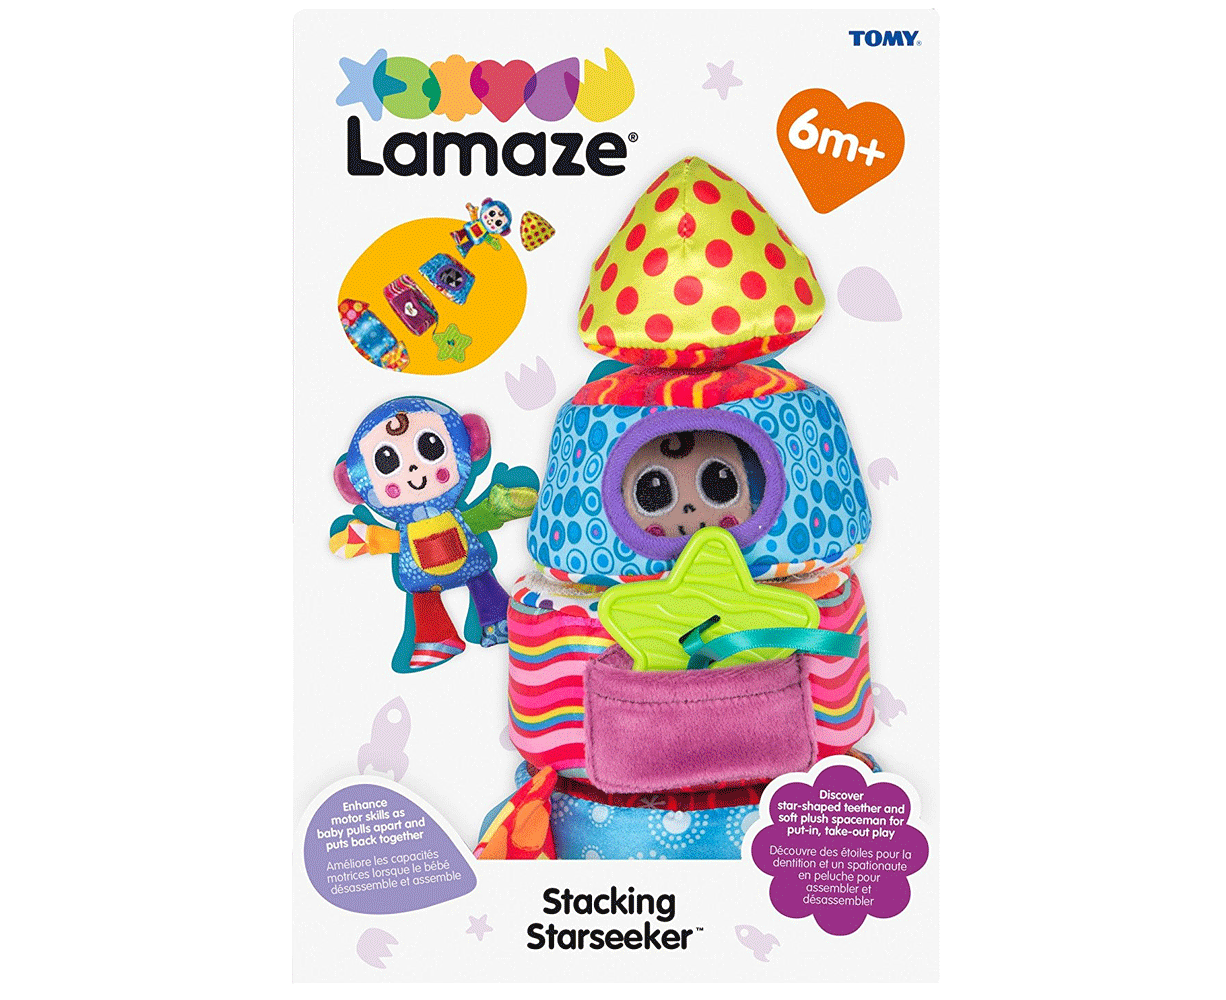 Lamaze Stacking Starseeker Plush Soft Toy Rocket/Spaceship for Baby/Toddler